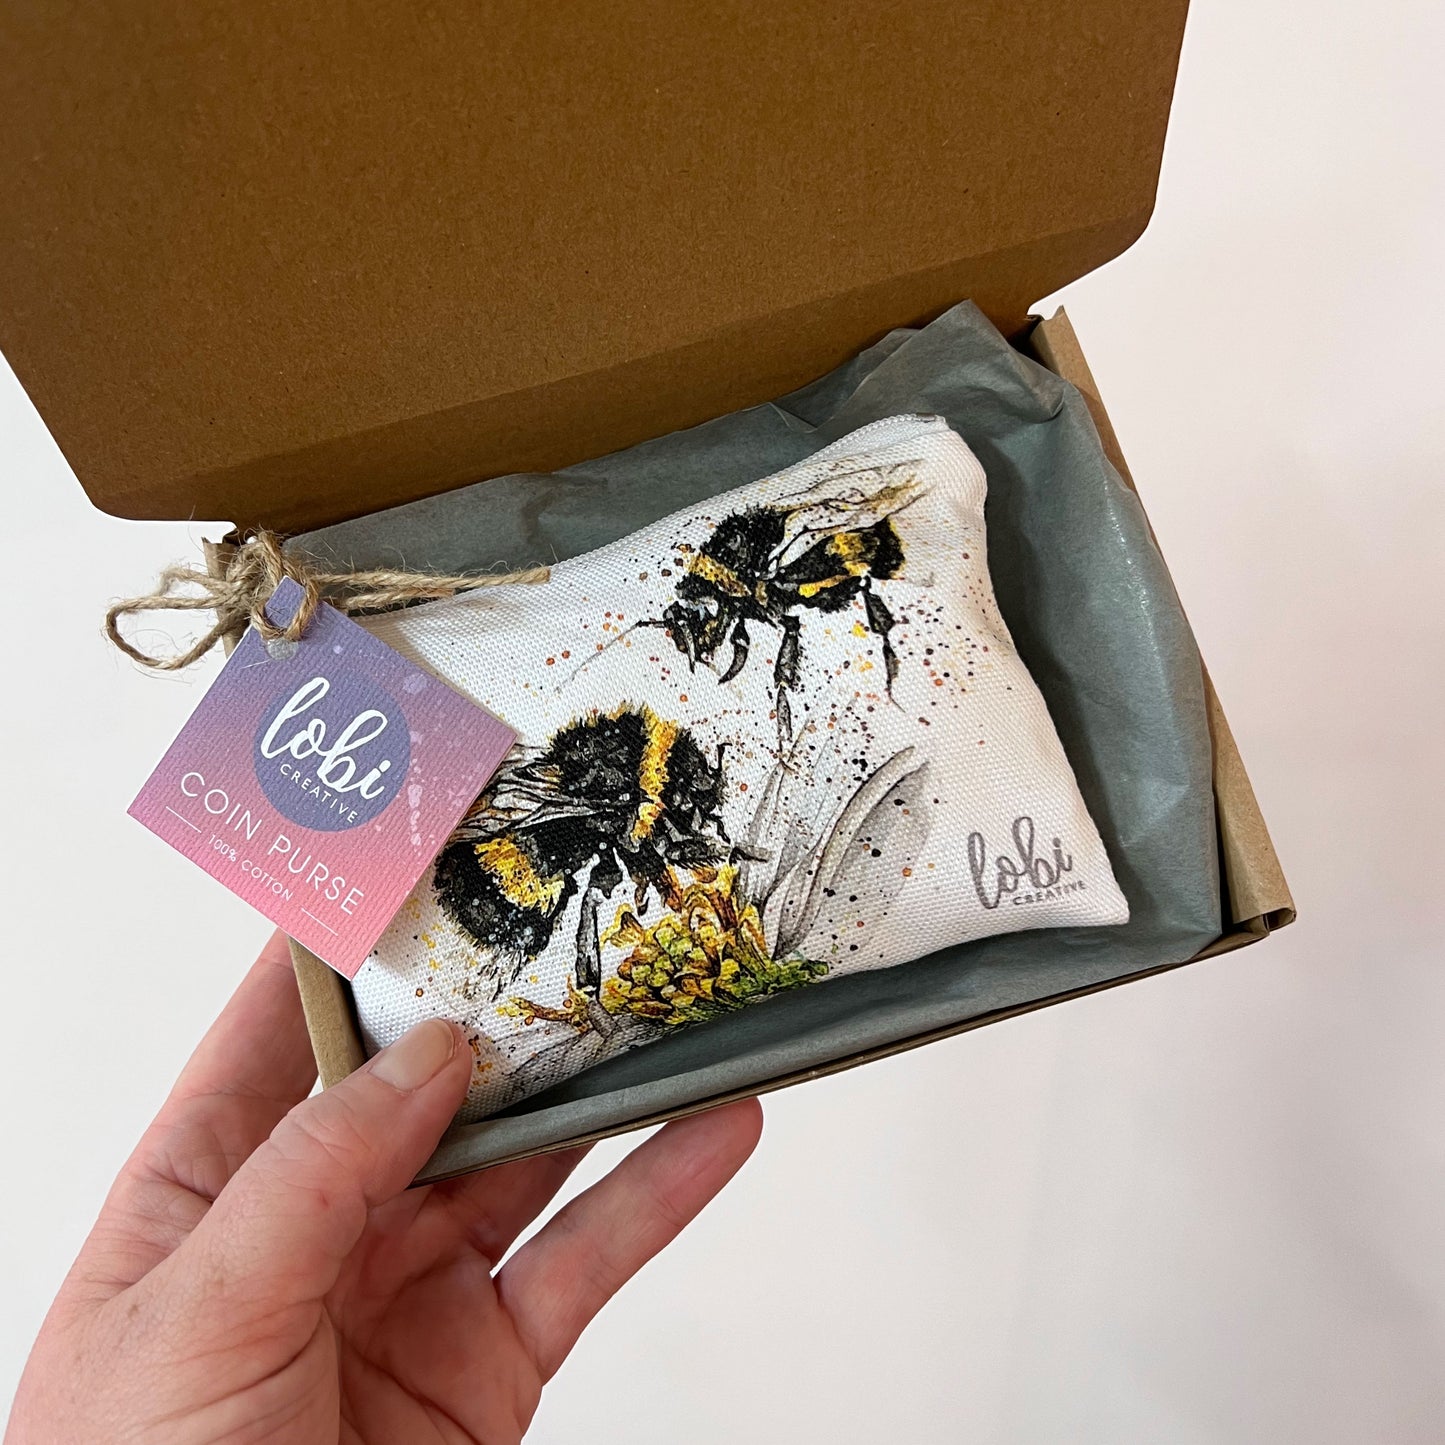 Watercolour Bee Cotton Coin Purse & Gift Box